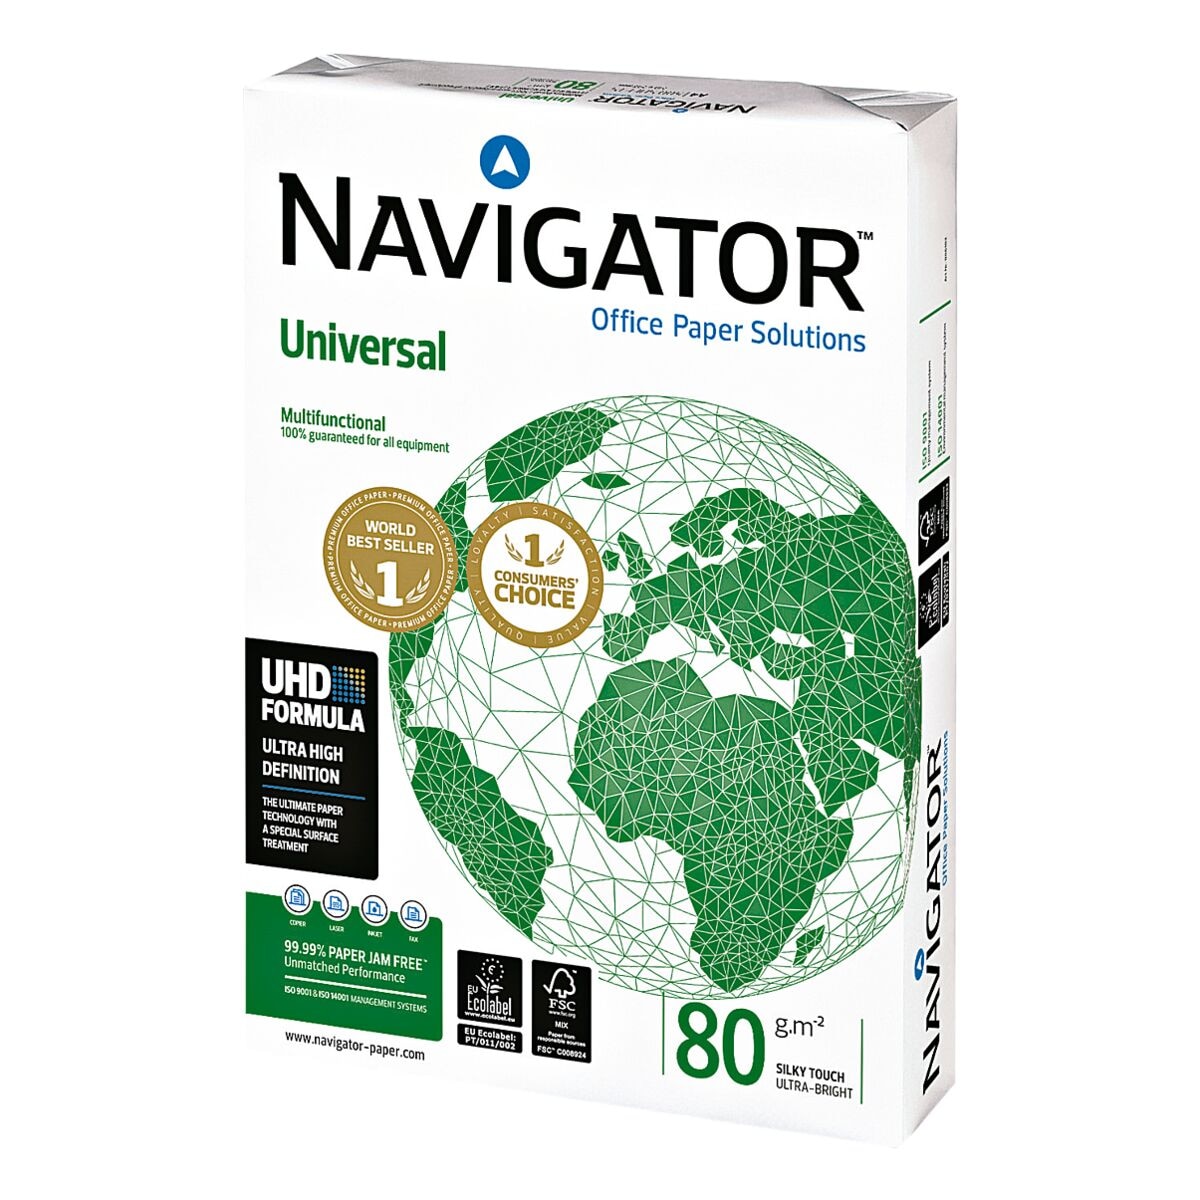 Multifunktionales Druckerpapier A4 Navigator Universal - 500 Blatt gesamt